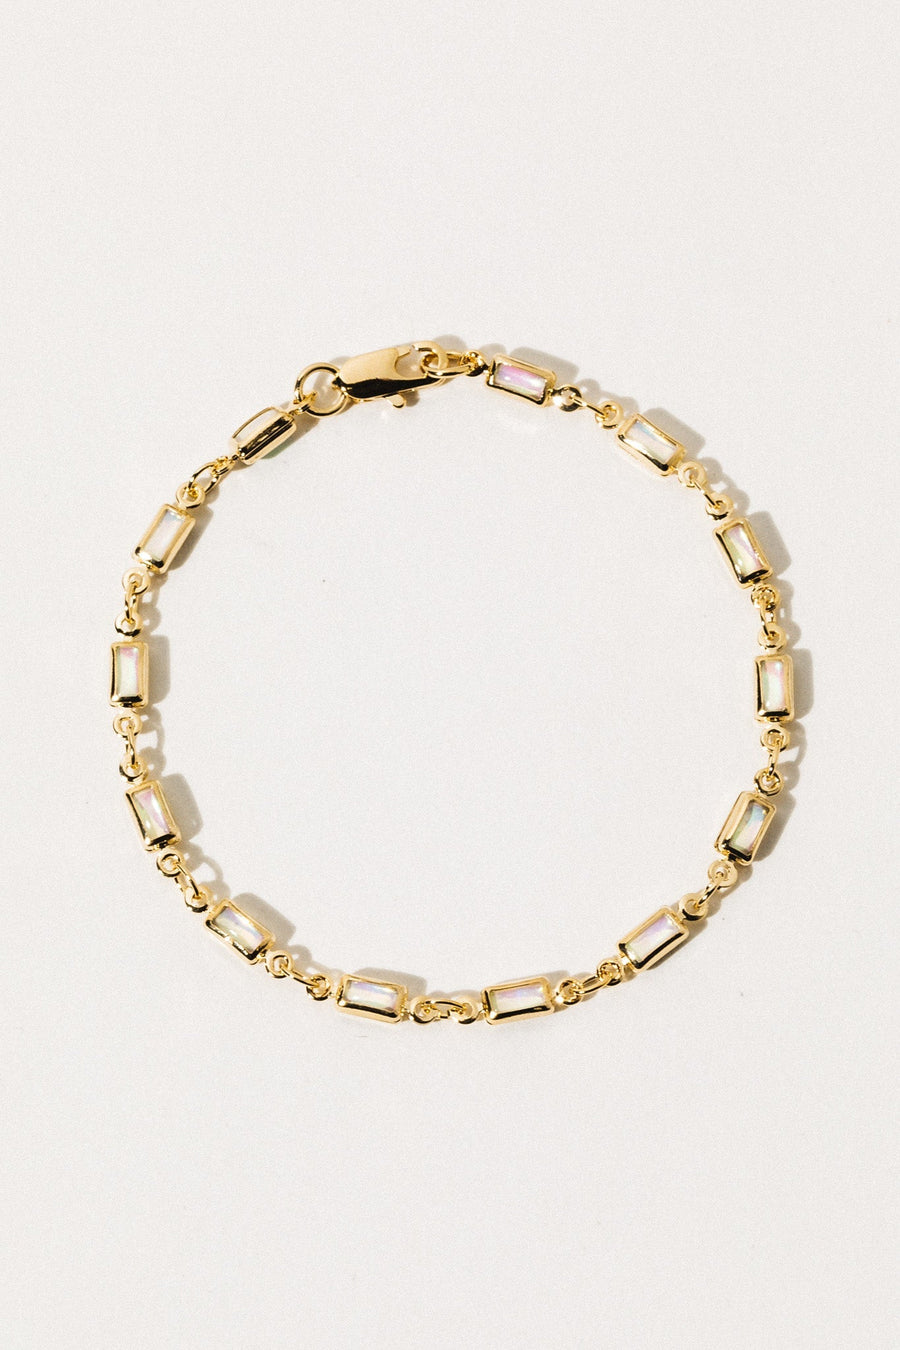 Dona Italia Jewelry Gold / 7 inches Ophelia Opal Bracelet